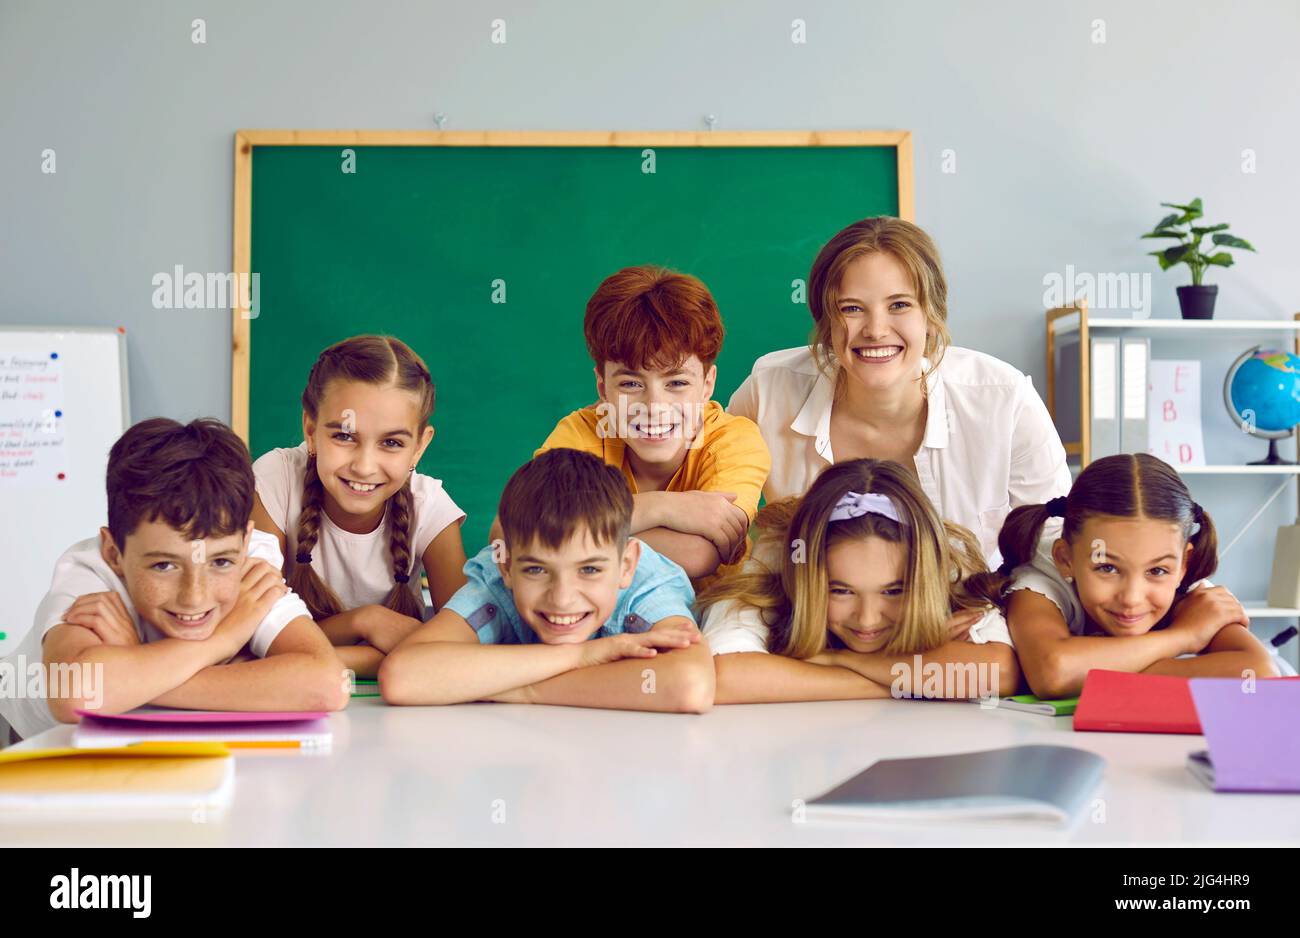 Ritratto di allegro gruppo di studenti delle scuole elementari e la loro amichevole insegnante casual femminile. Foto Stock